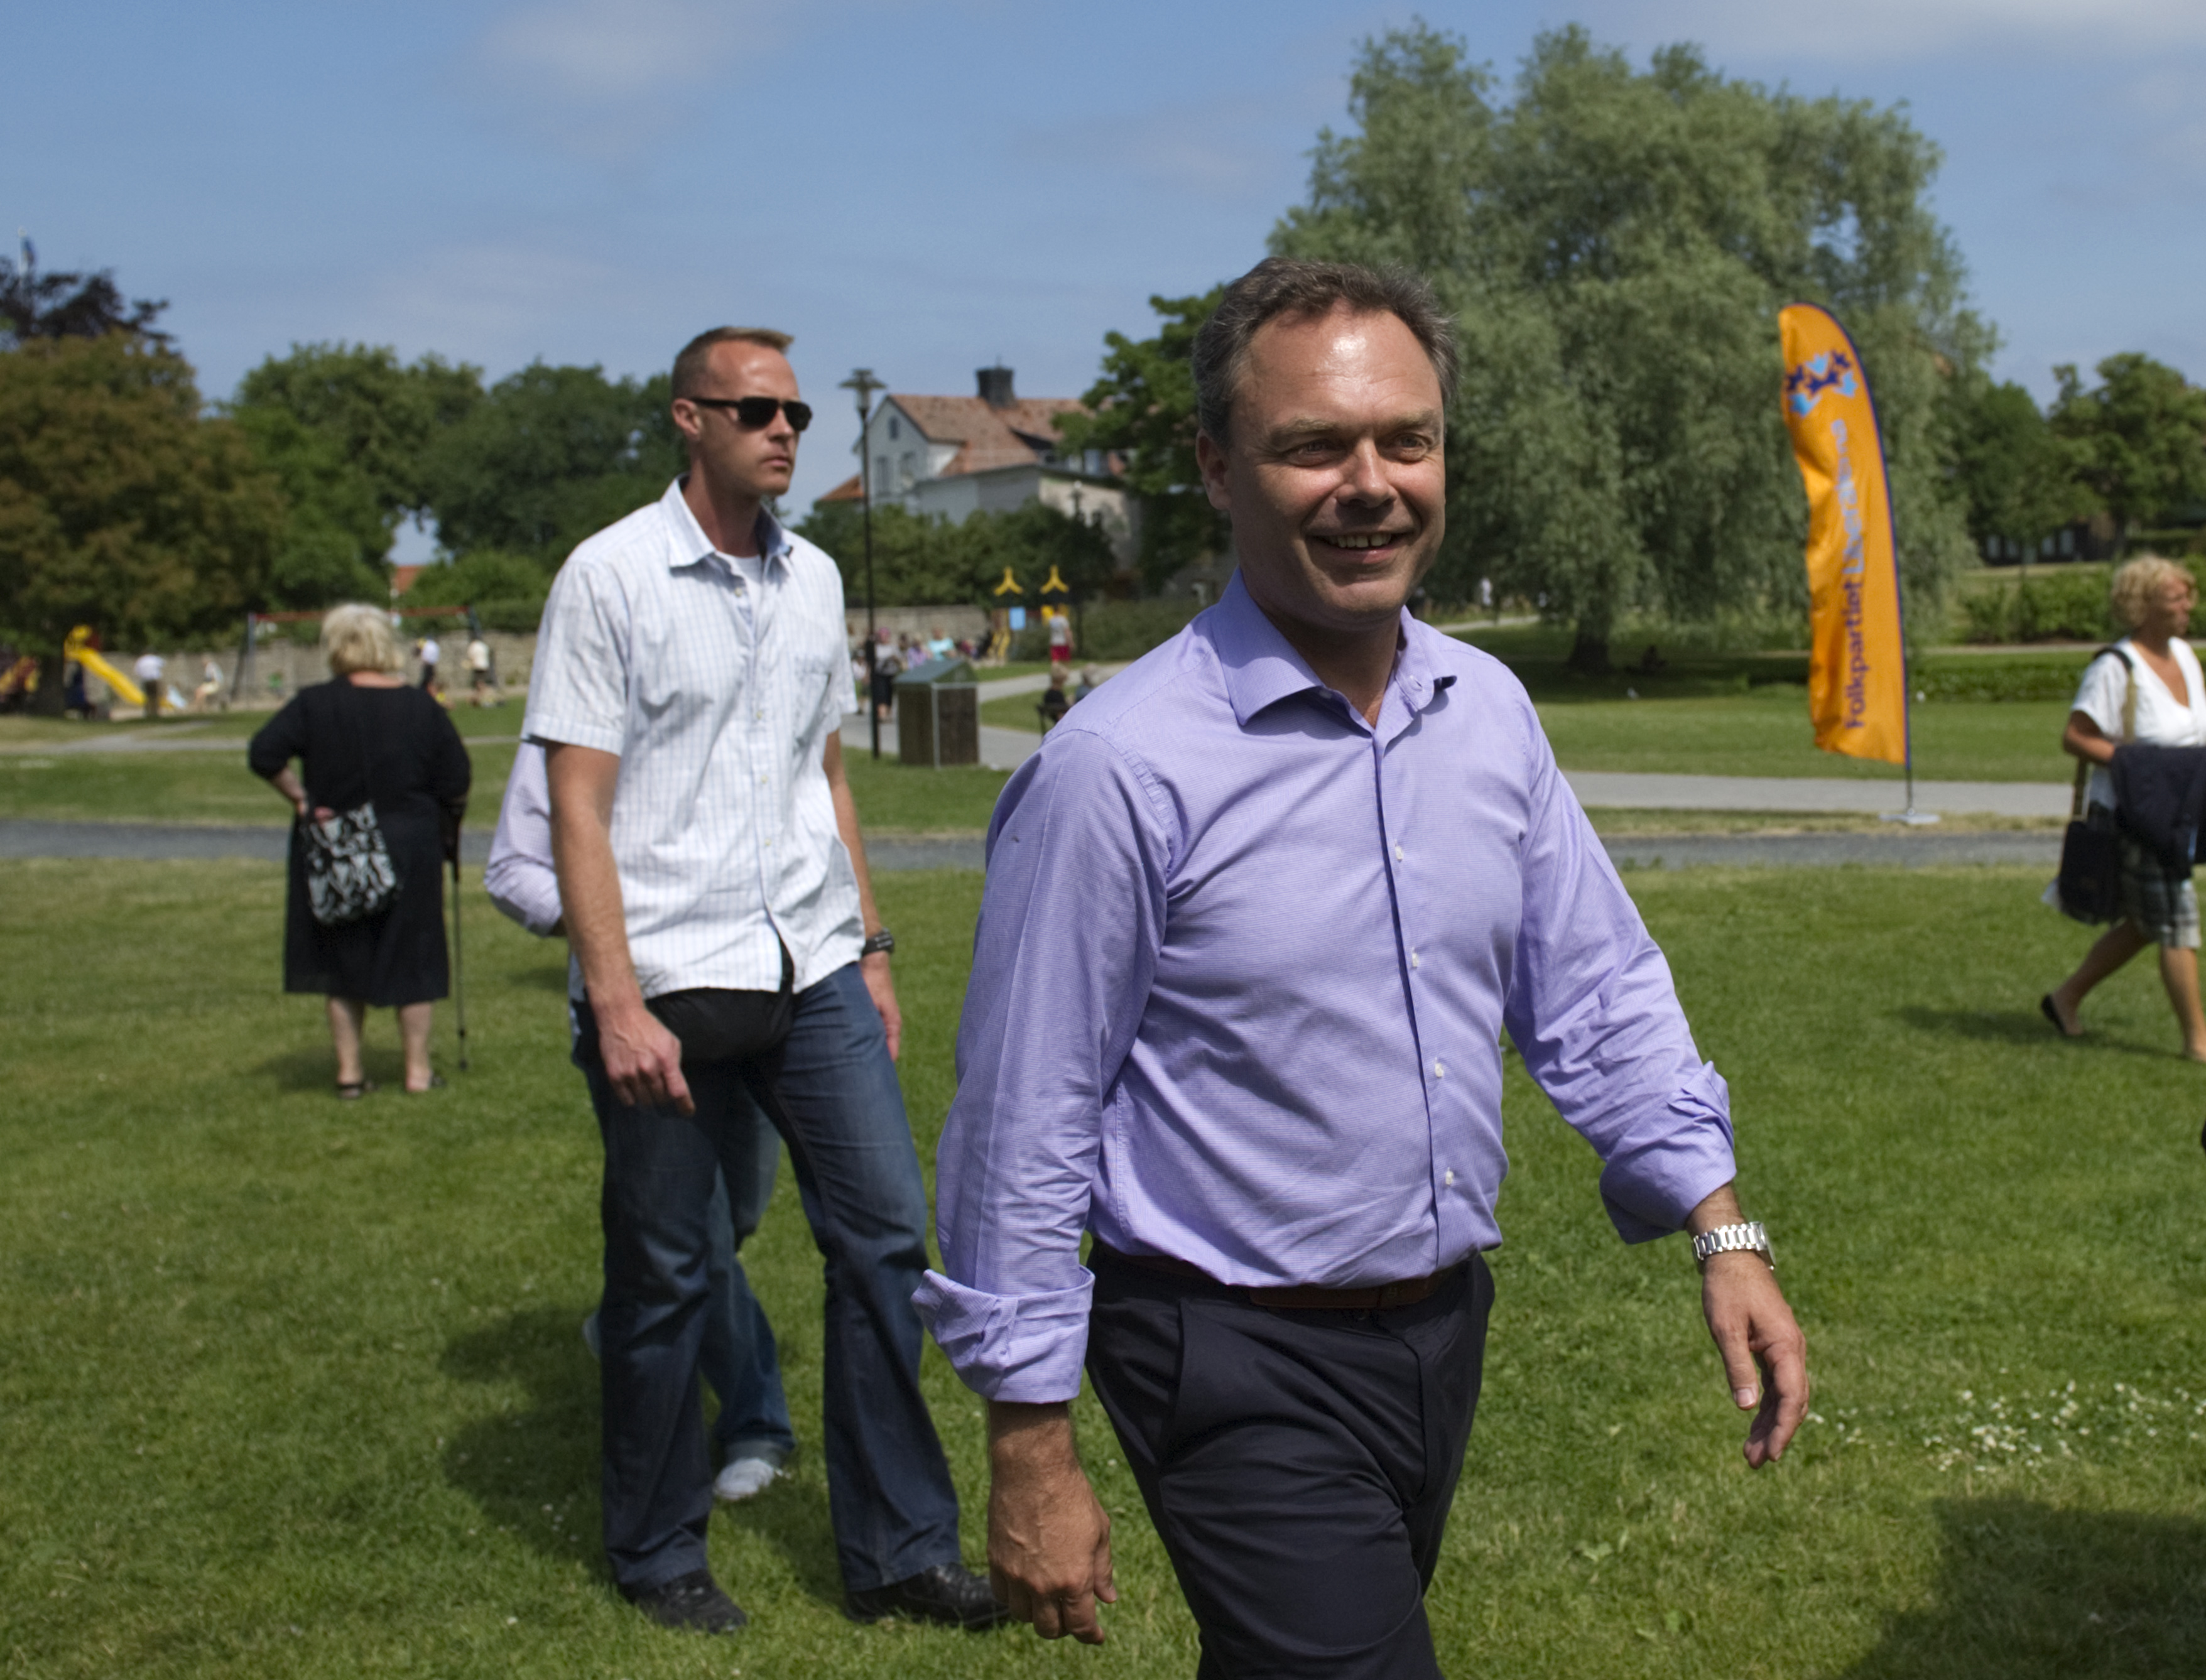 Fp-ledaren Jan Björklund laddar inför sitt tal i Almedalsparken i Visby.